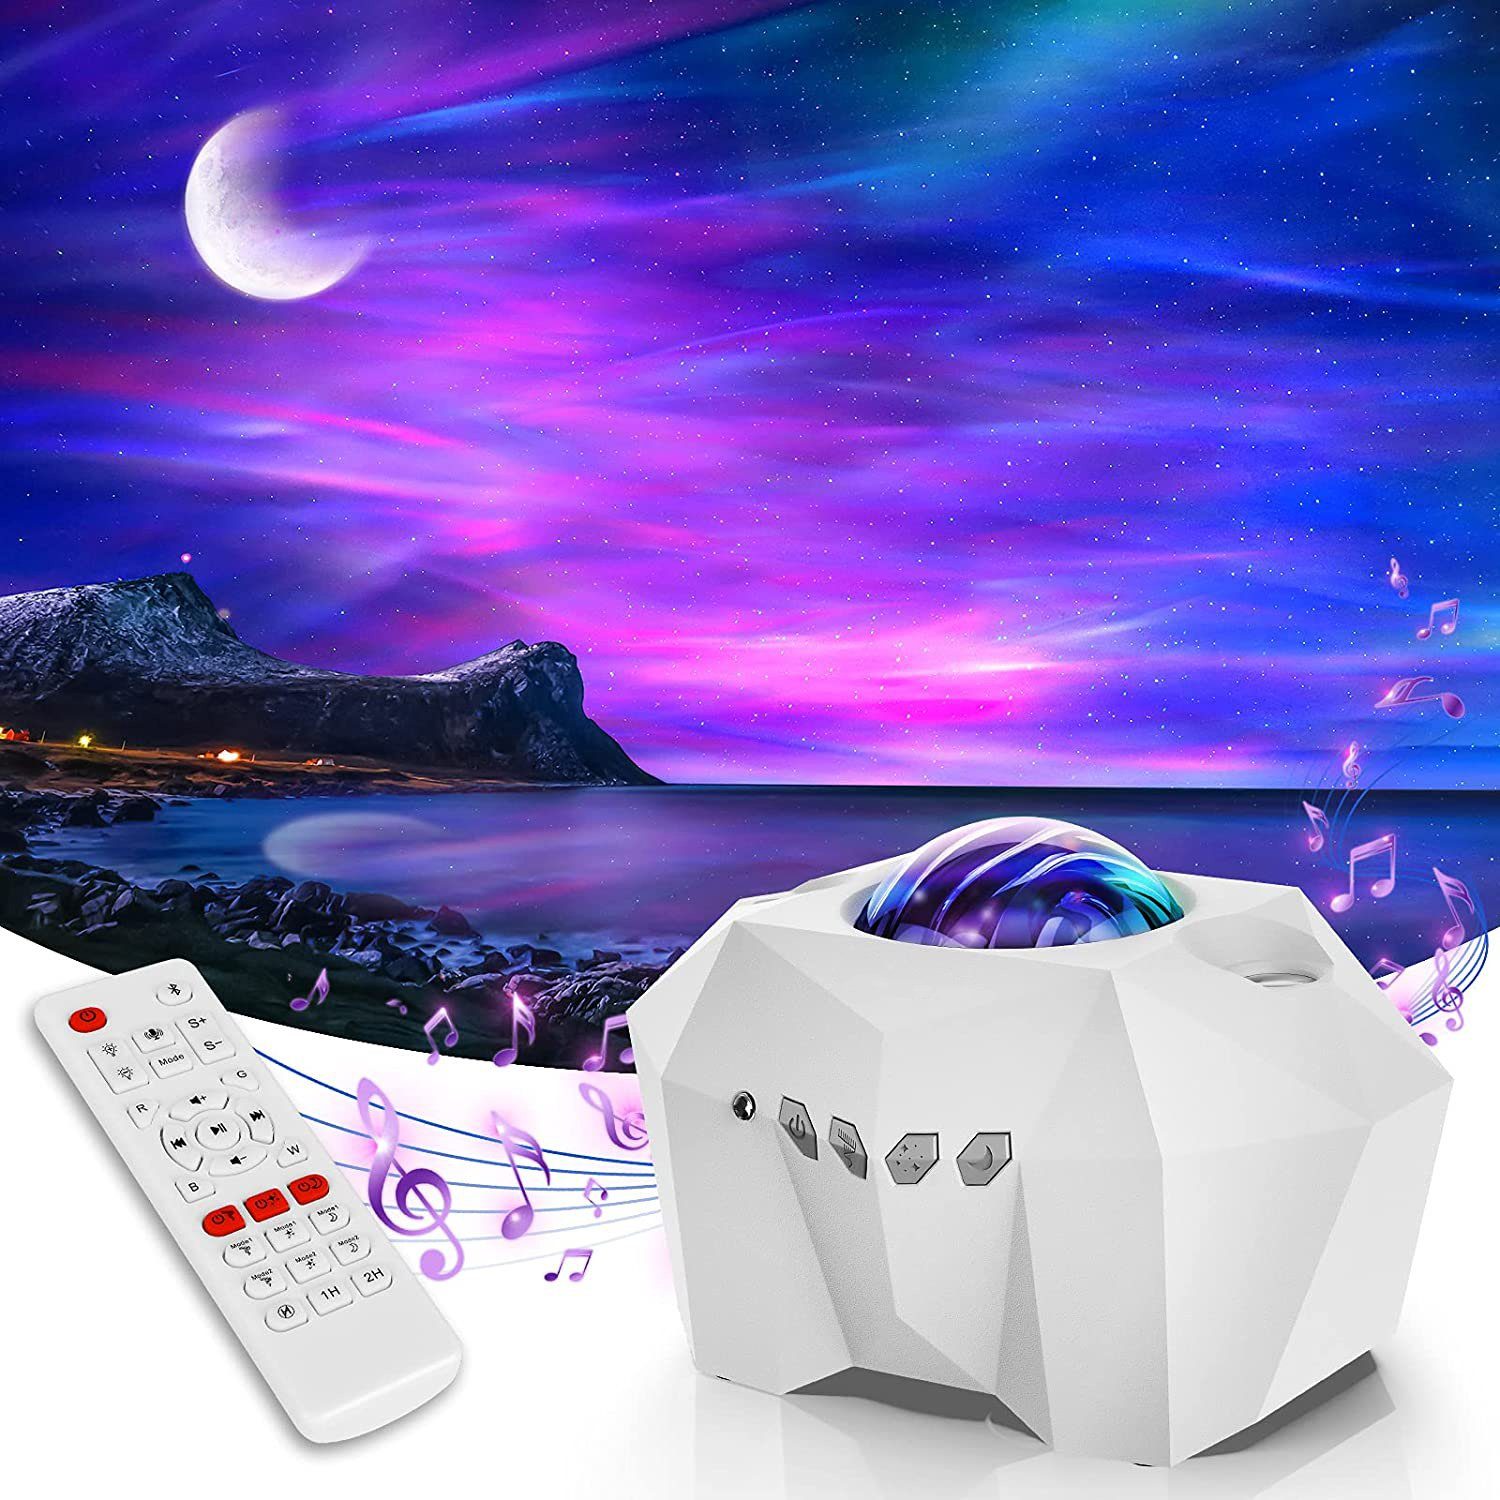 Rosnek LED Nachtlicht Sternenhimmel, Bluetooth, mit Fernbedienung, für Schlafzimmer Party, Hifi-Stereo-Musiklautsprecher